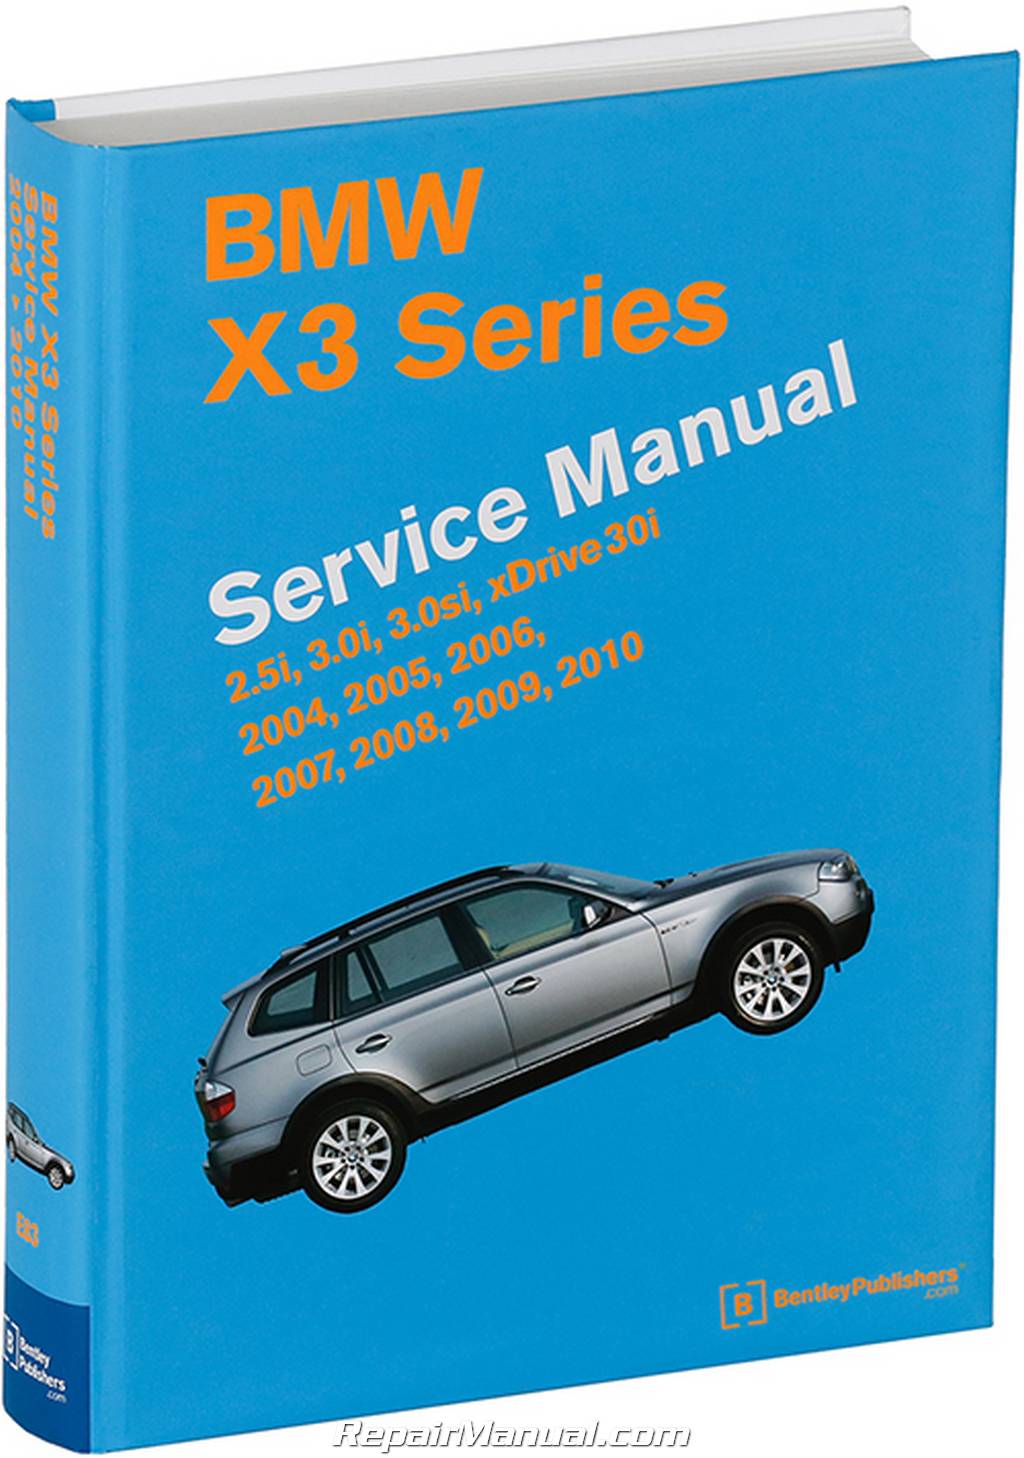 Bmw X3 M54 N52 Engines Printed Service Manual 2004